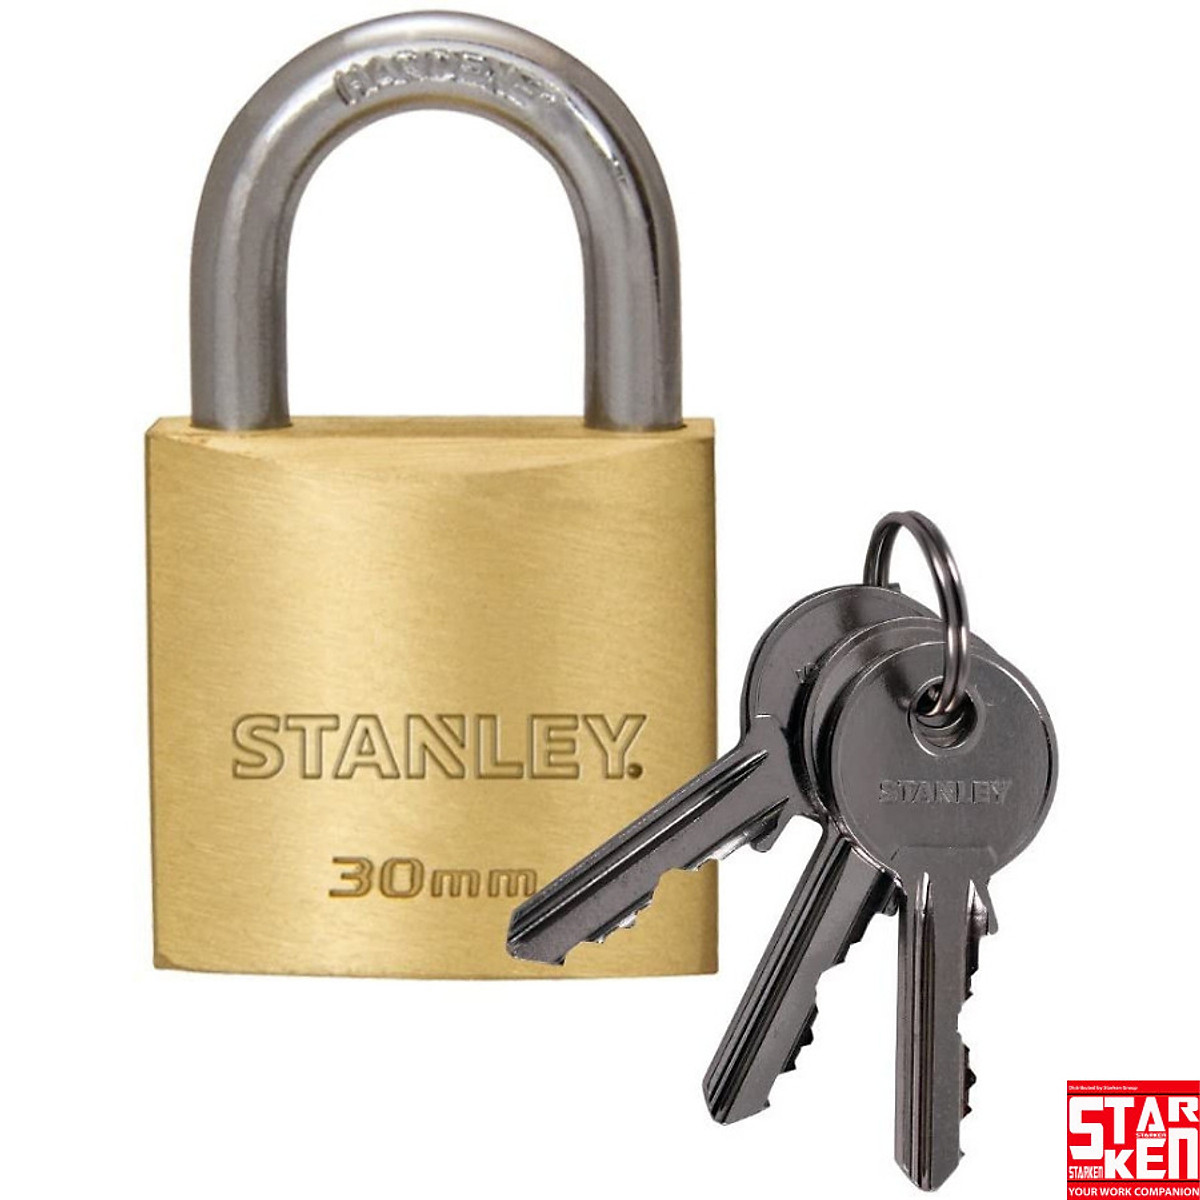 Ổ Khoá Stanley S742 – 030,Khóa càng tiêu chuẩn, rộng 30mm - Ổ khóa